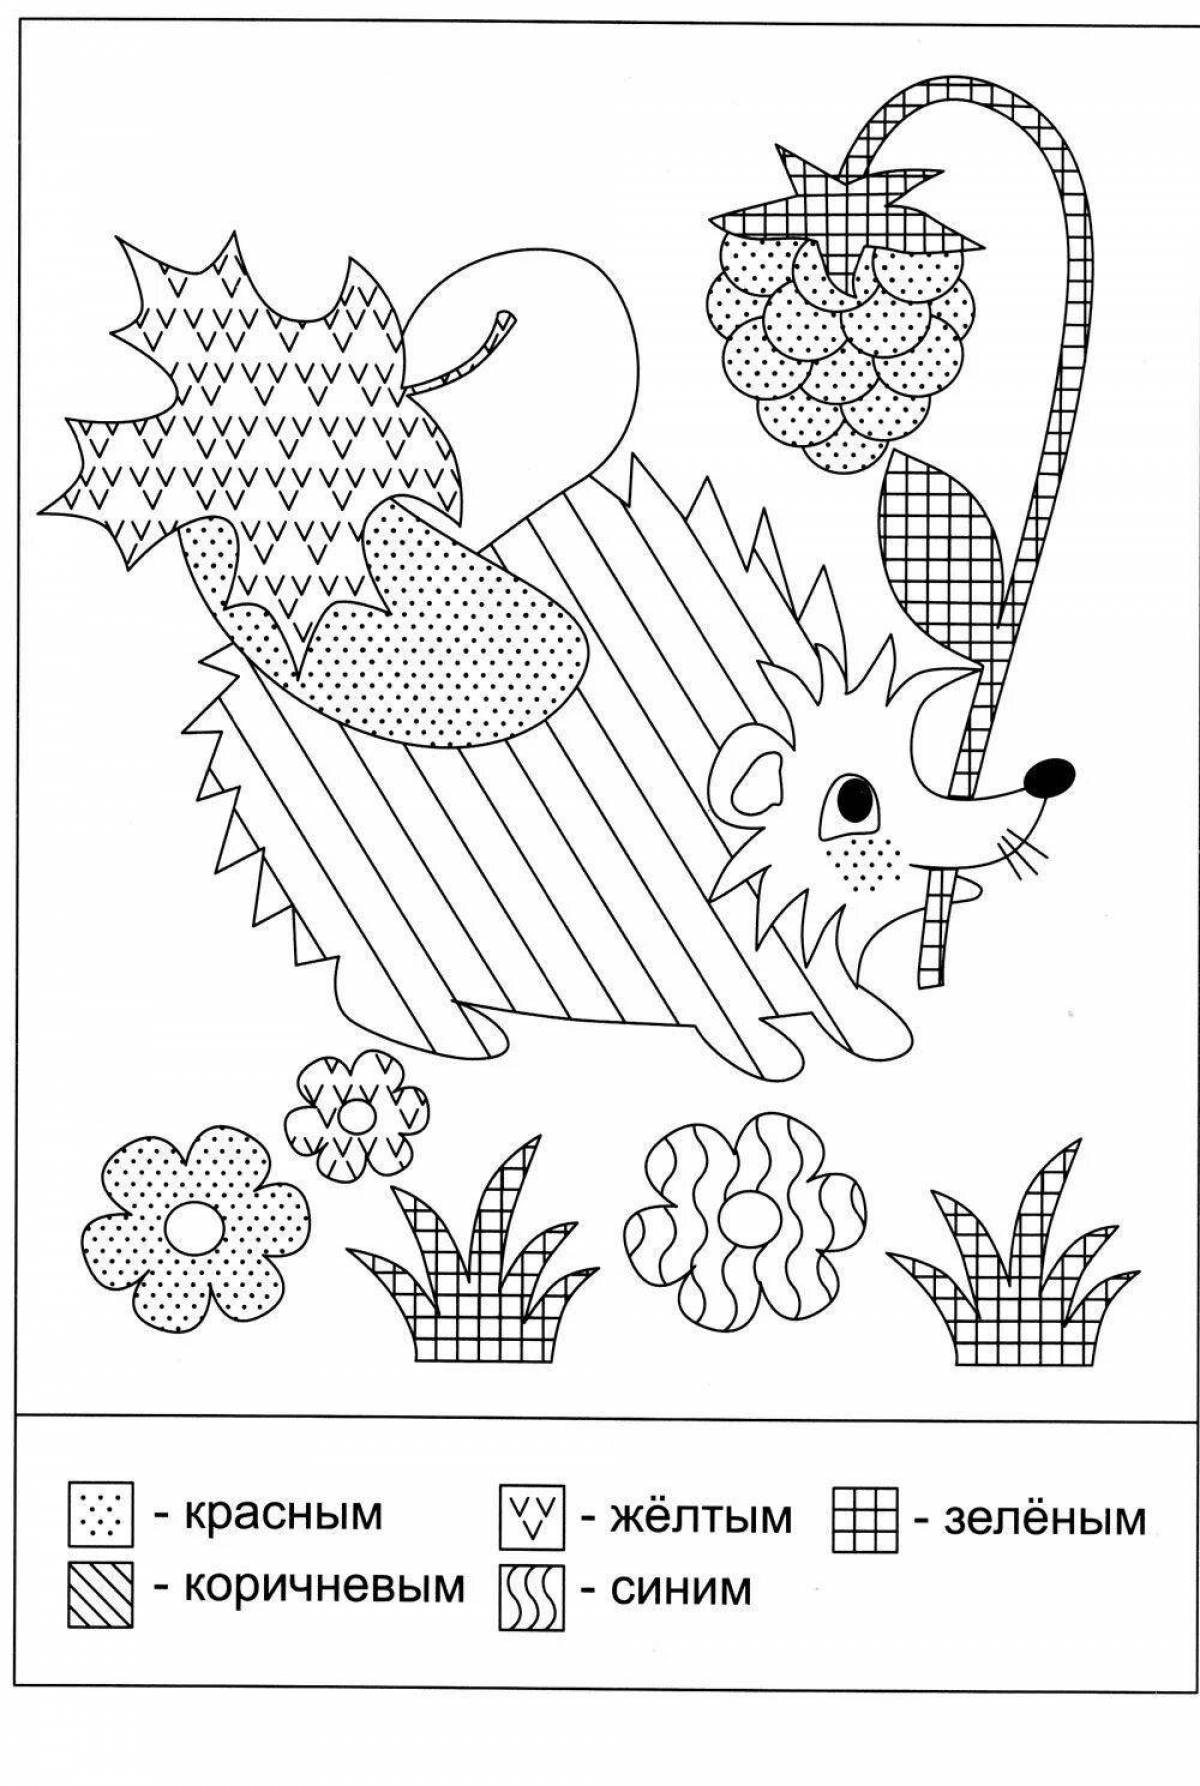 Wonderful hedgehog by numbers coloring